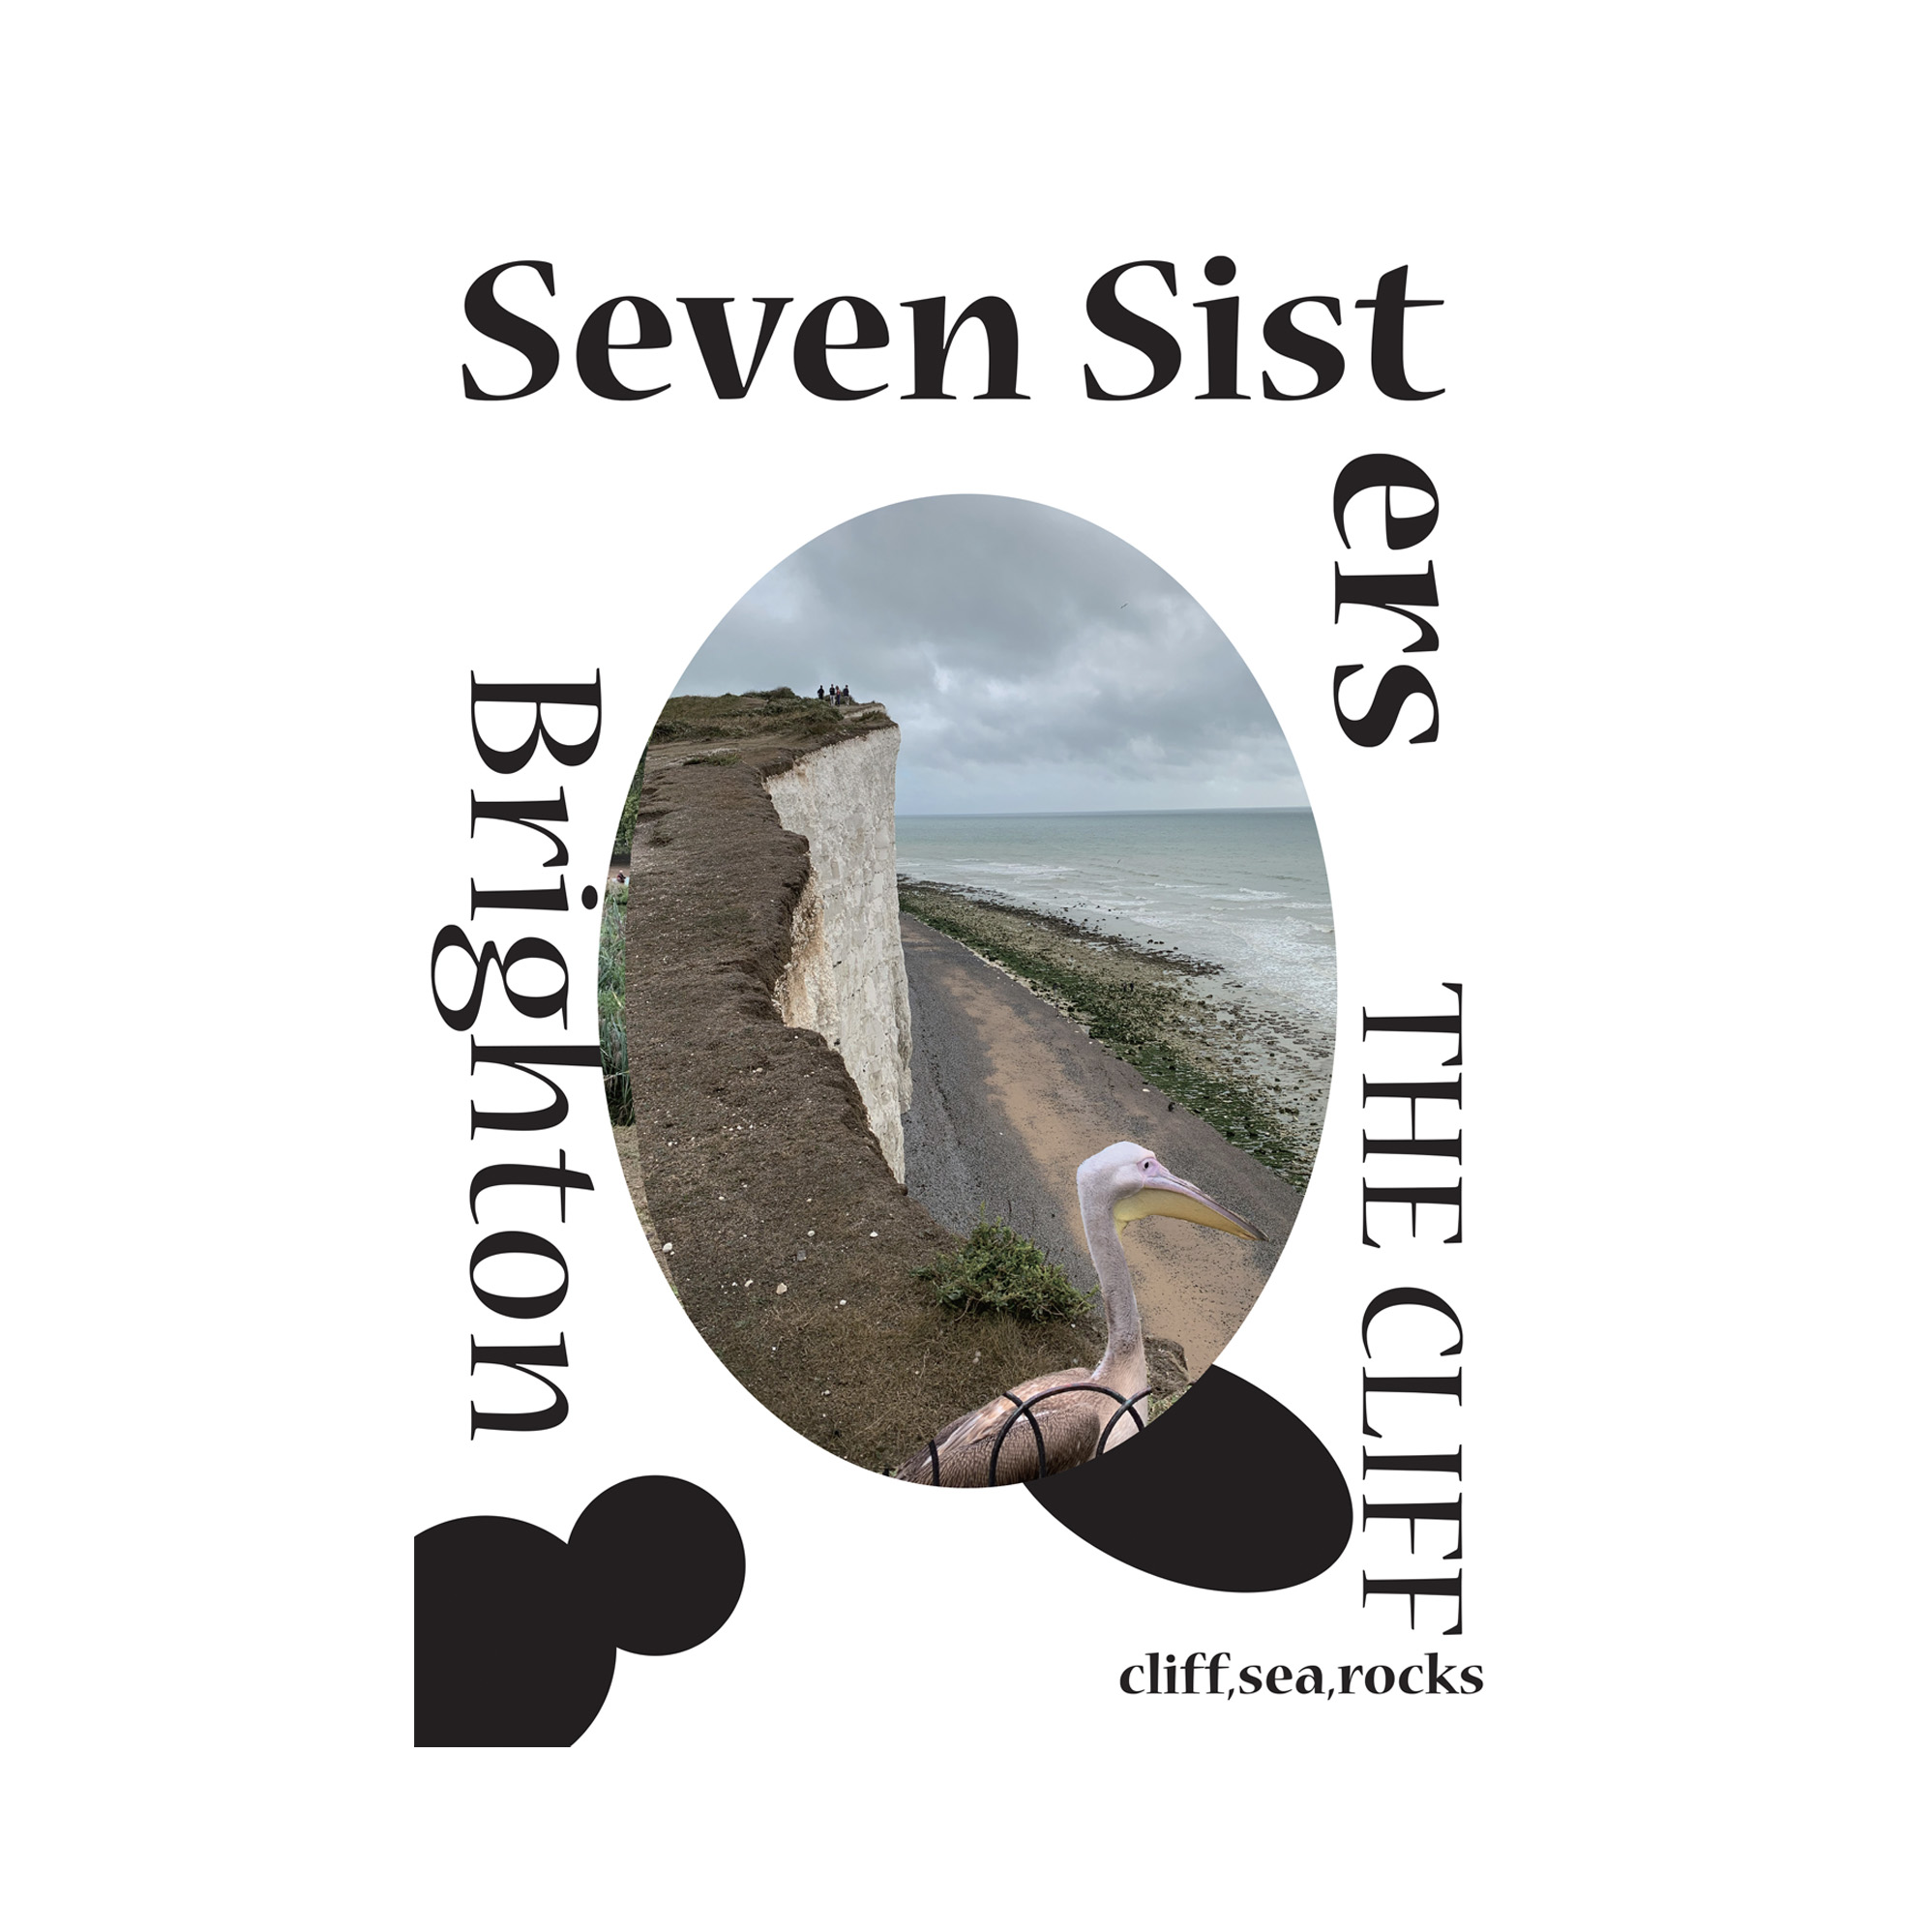 Seven sisters 양면 포스터